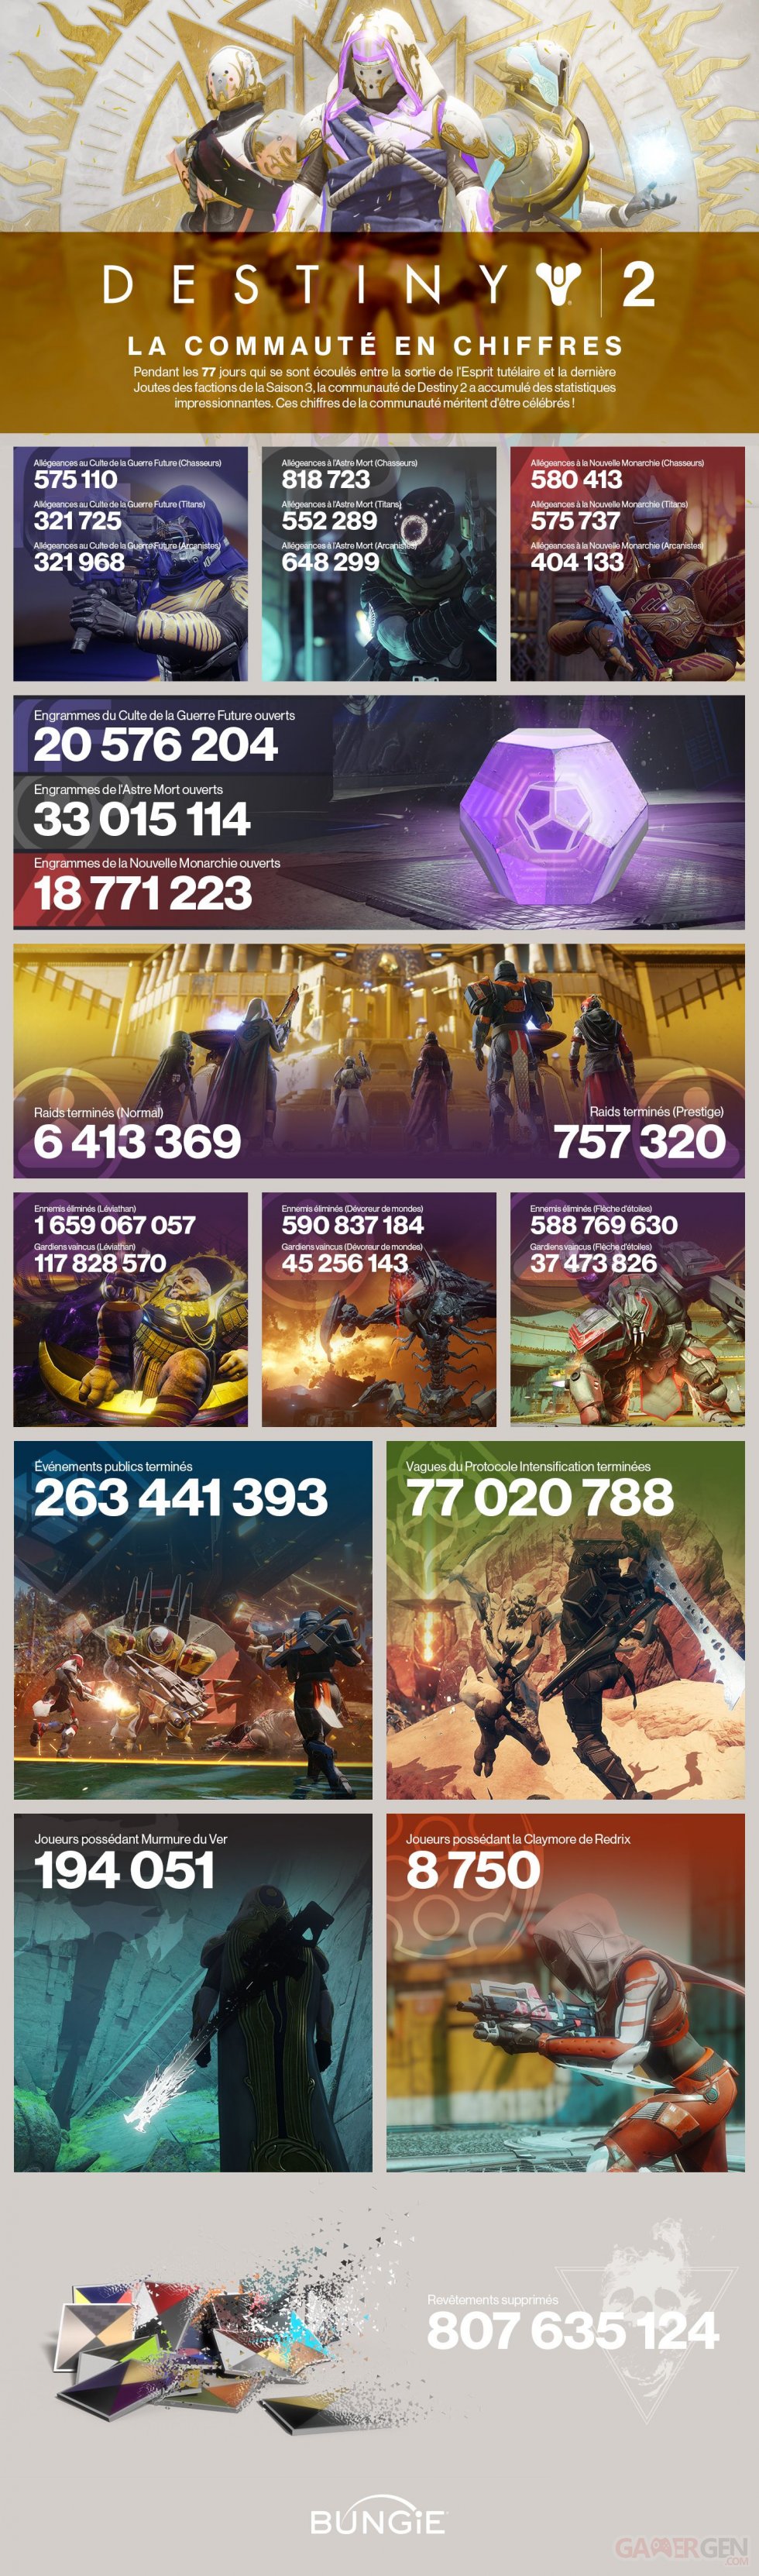 Destiny-2-infographie-Saison-3-14-08-2018